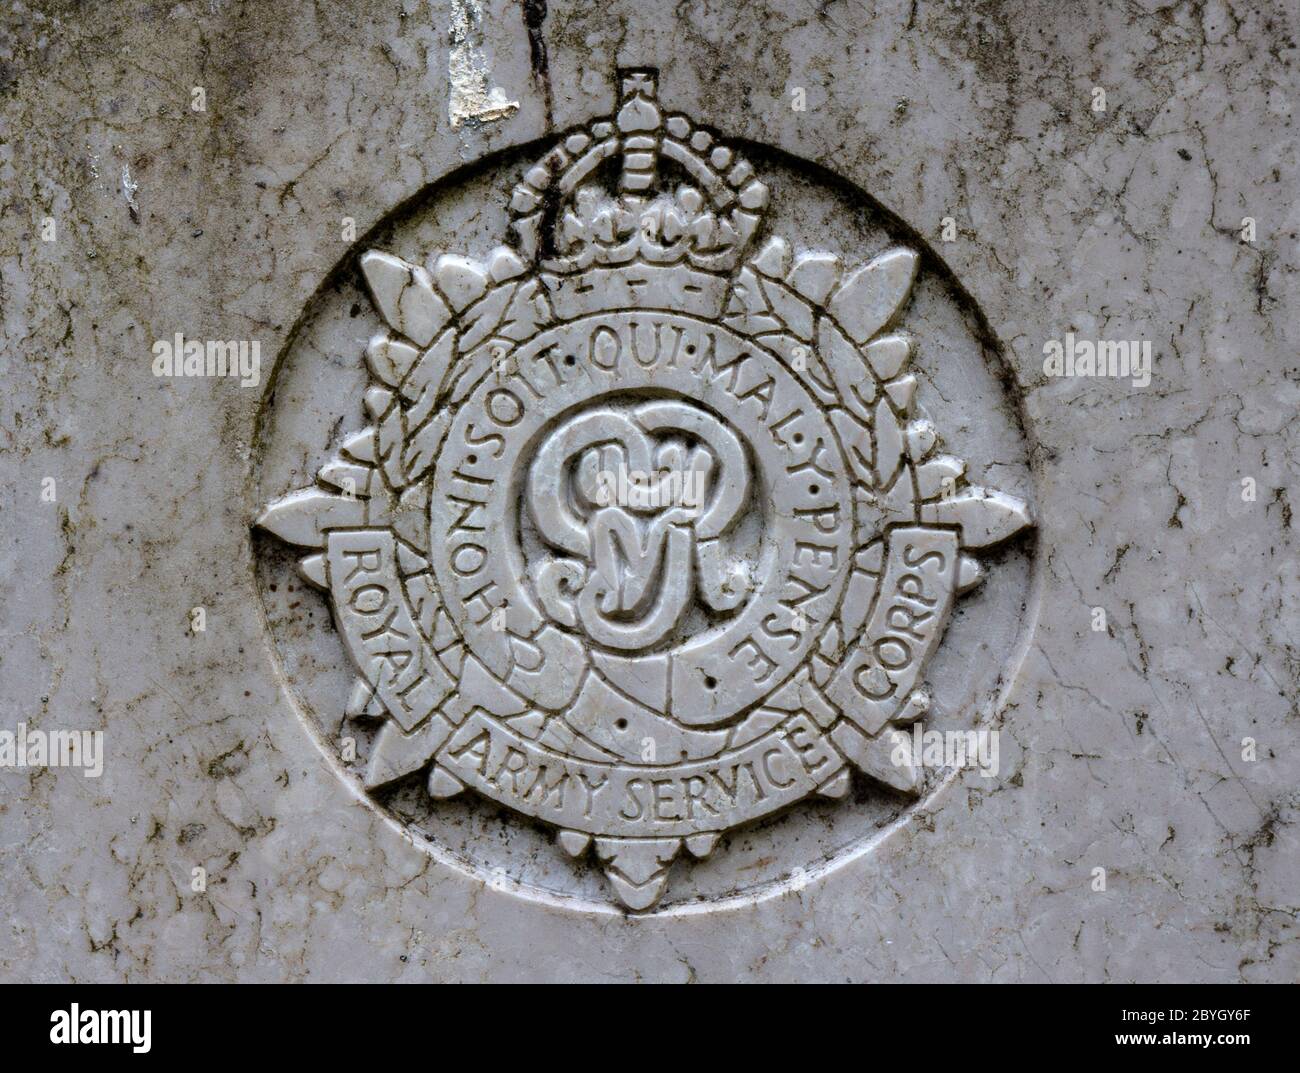 Wappen des Royal Army Service Corps auf einem Kriegsgrab, Großbritannien Stockfoto